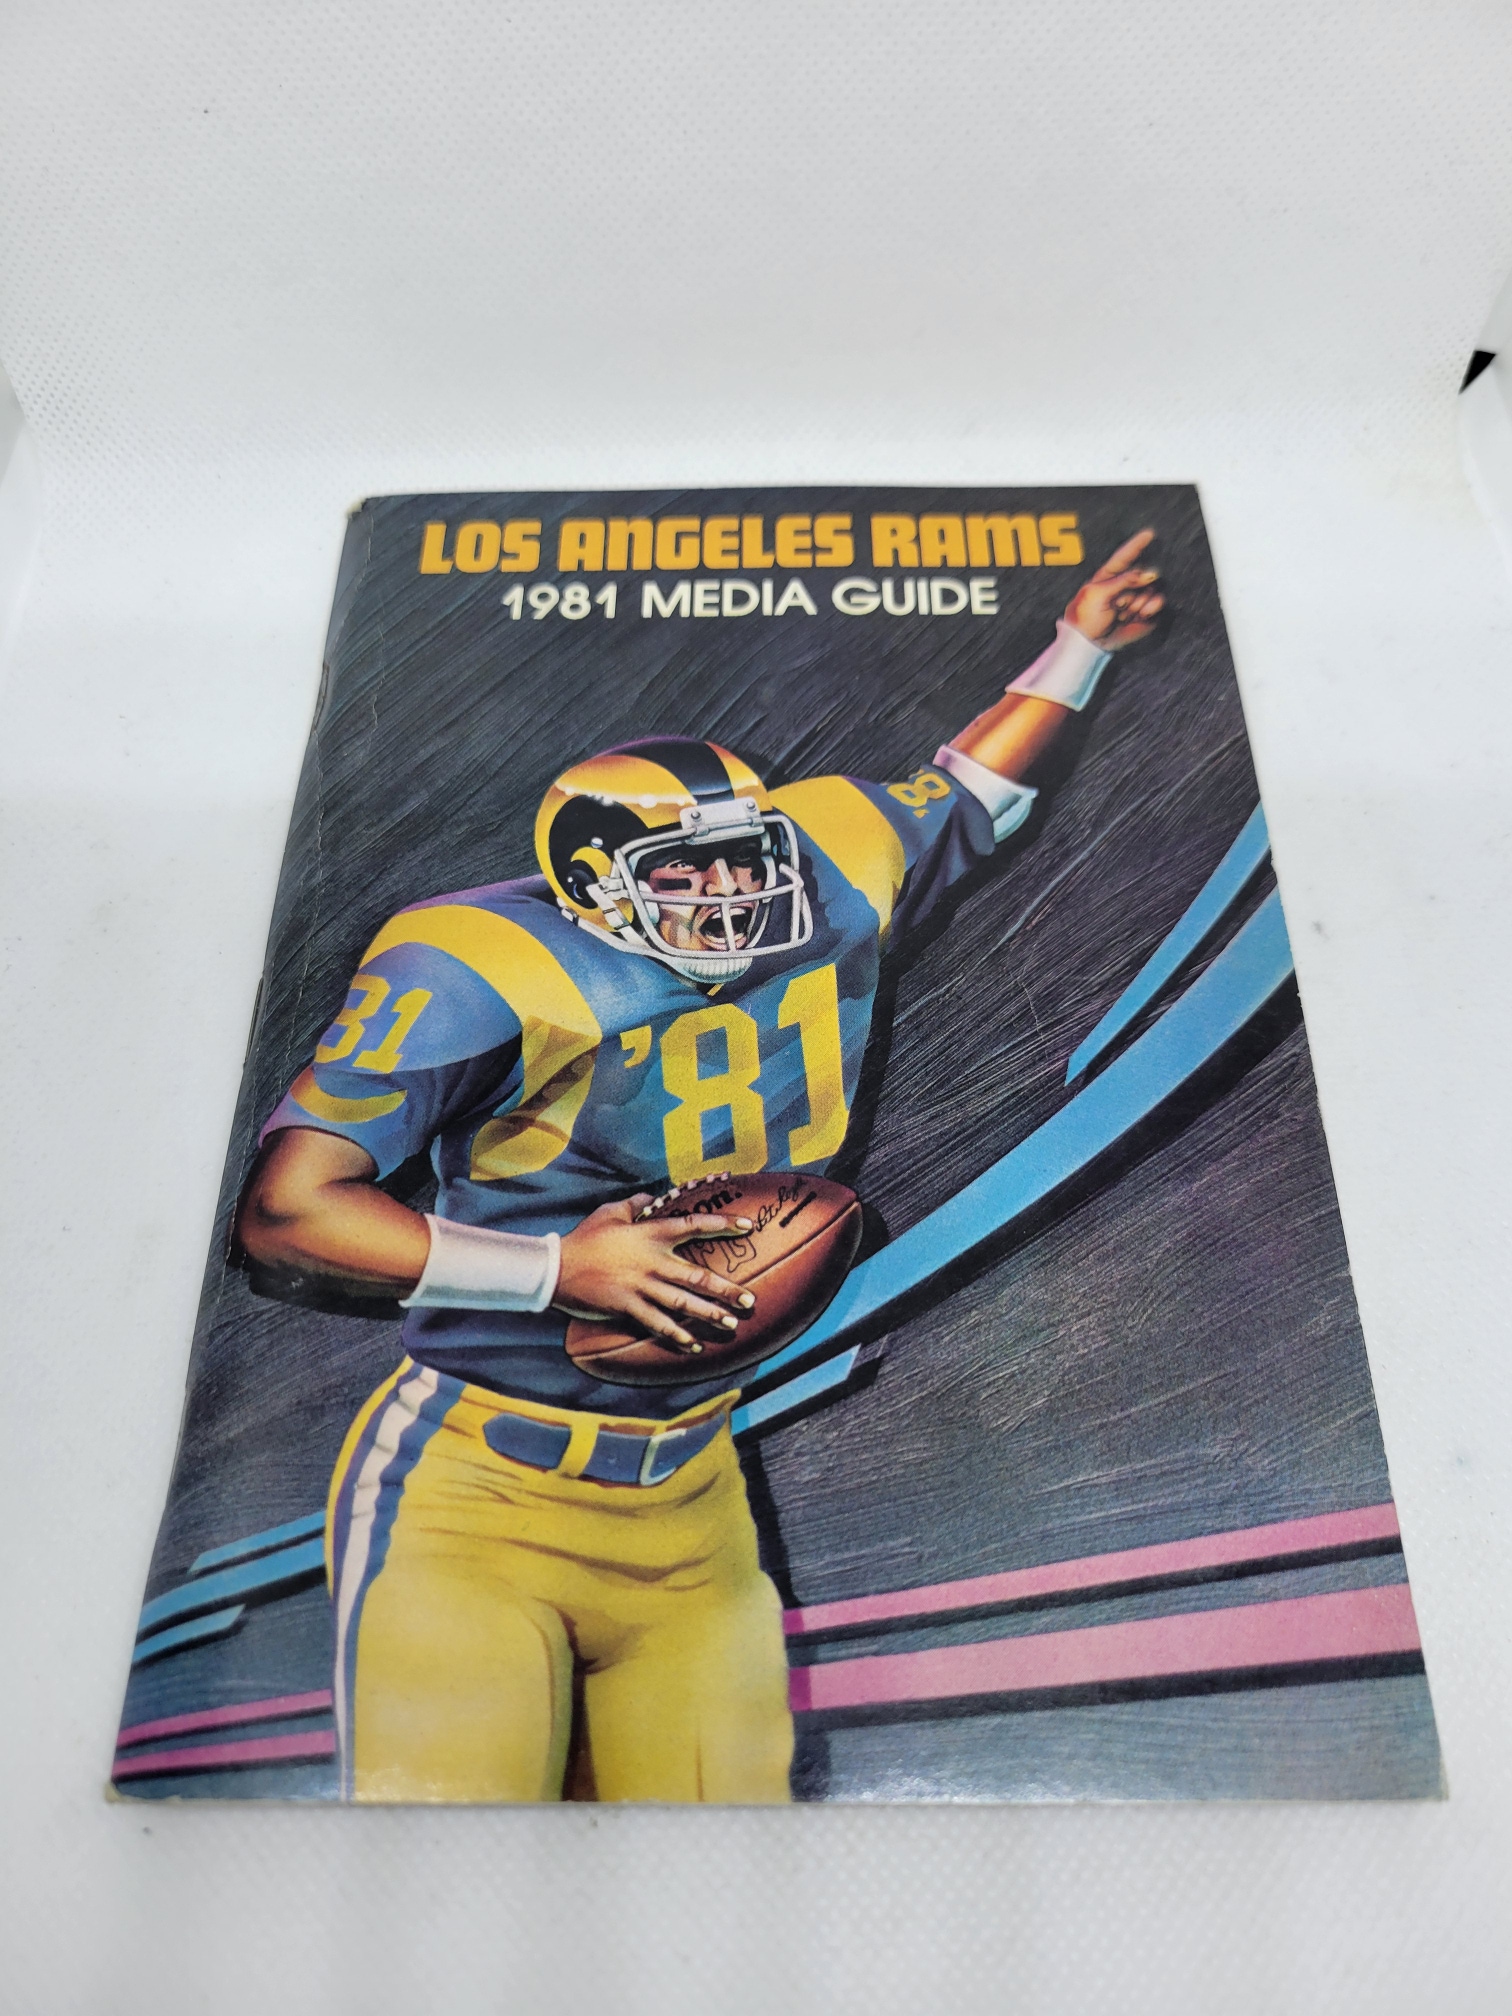 Vintage Los Angeles Rams NFL 1981 Media Guide